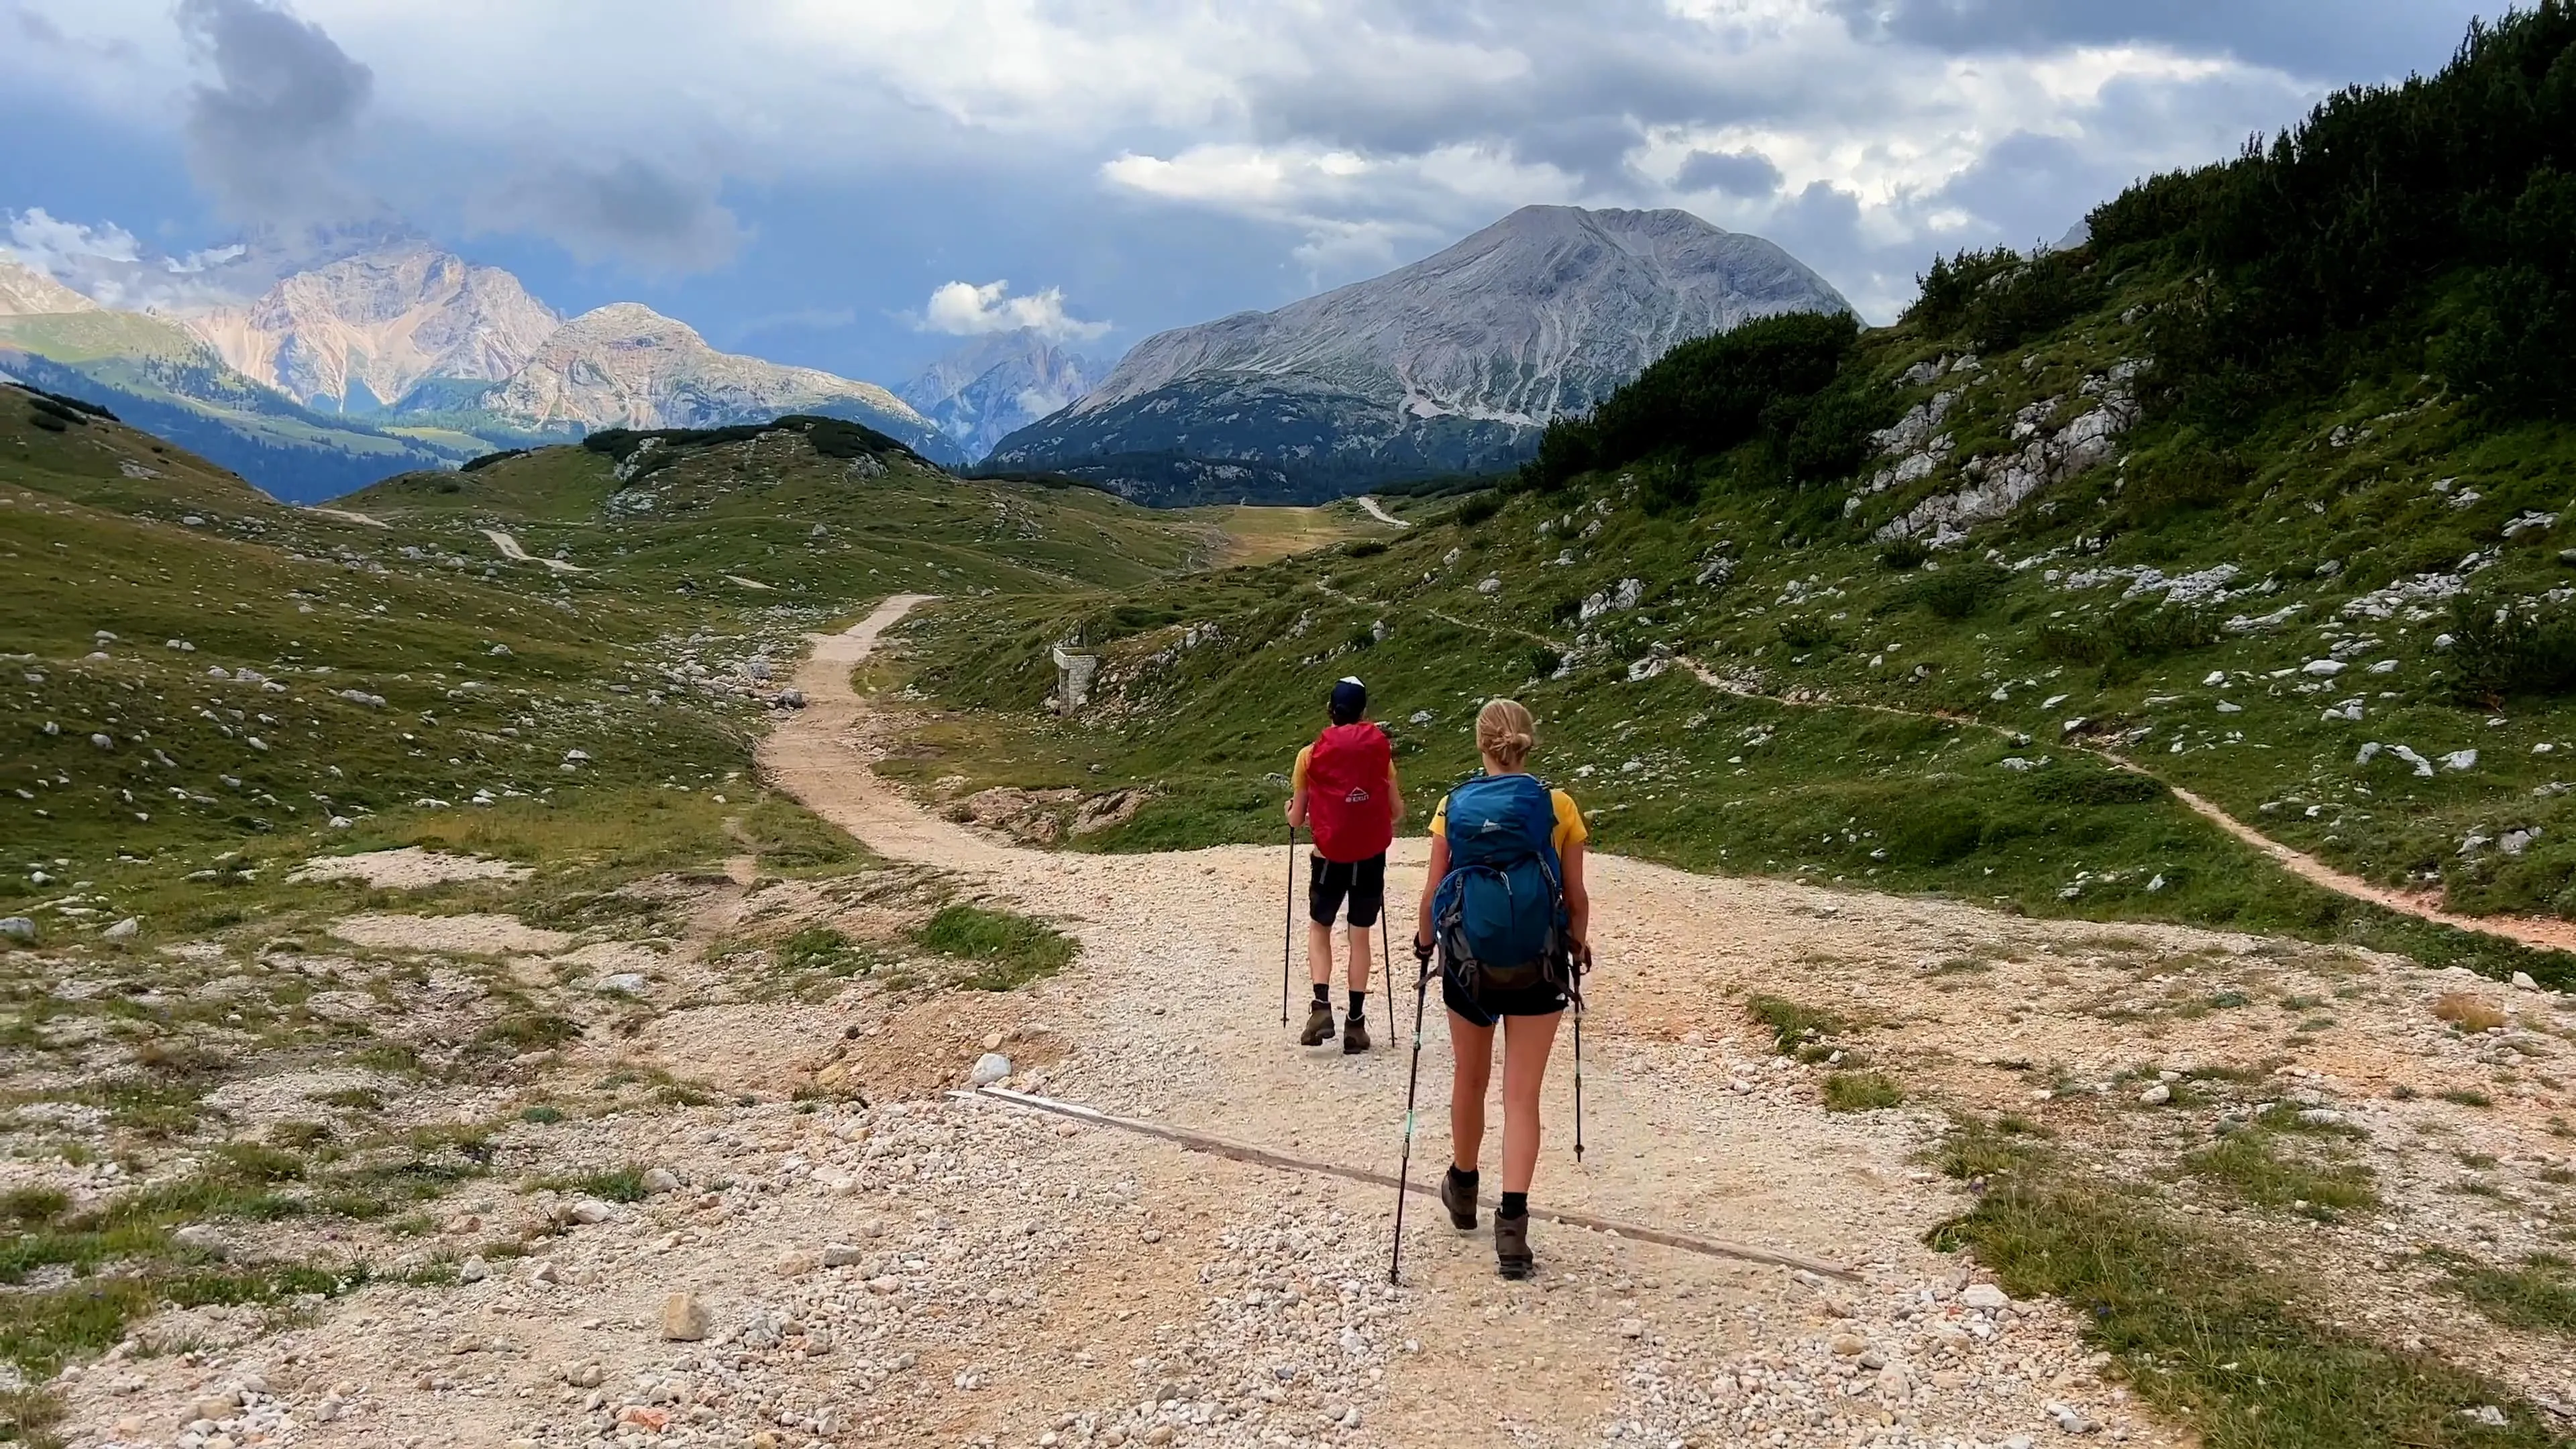 Alta Via 1, Italia: Med guide eller på egen hånd?